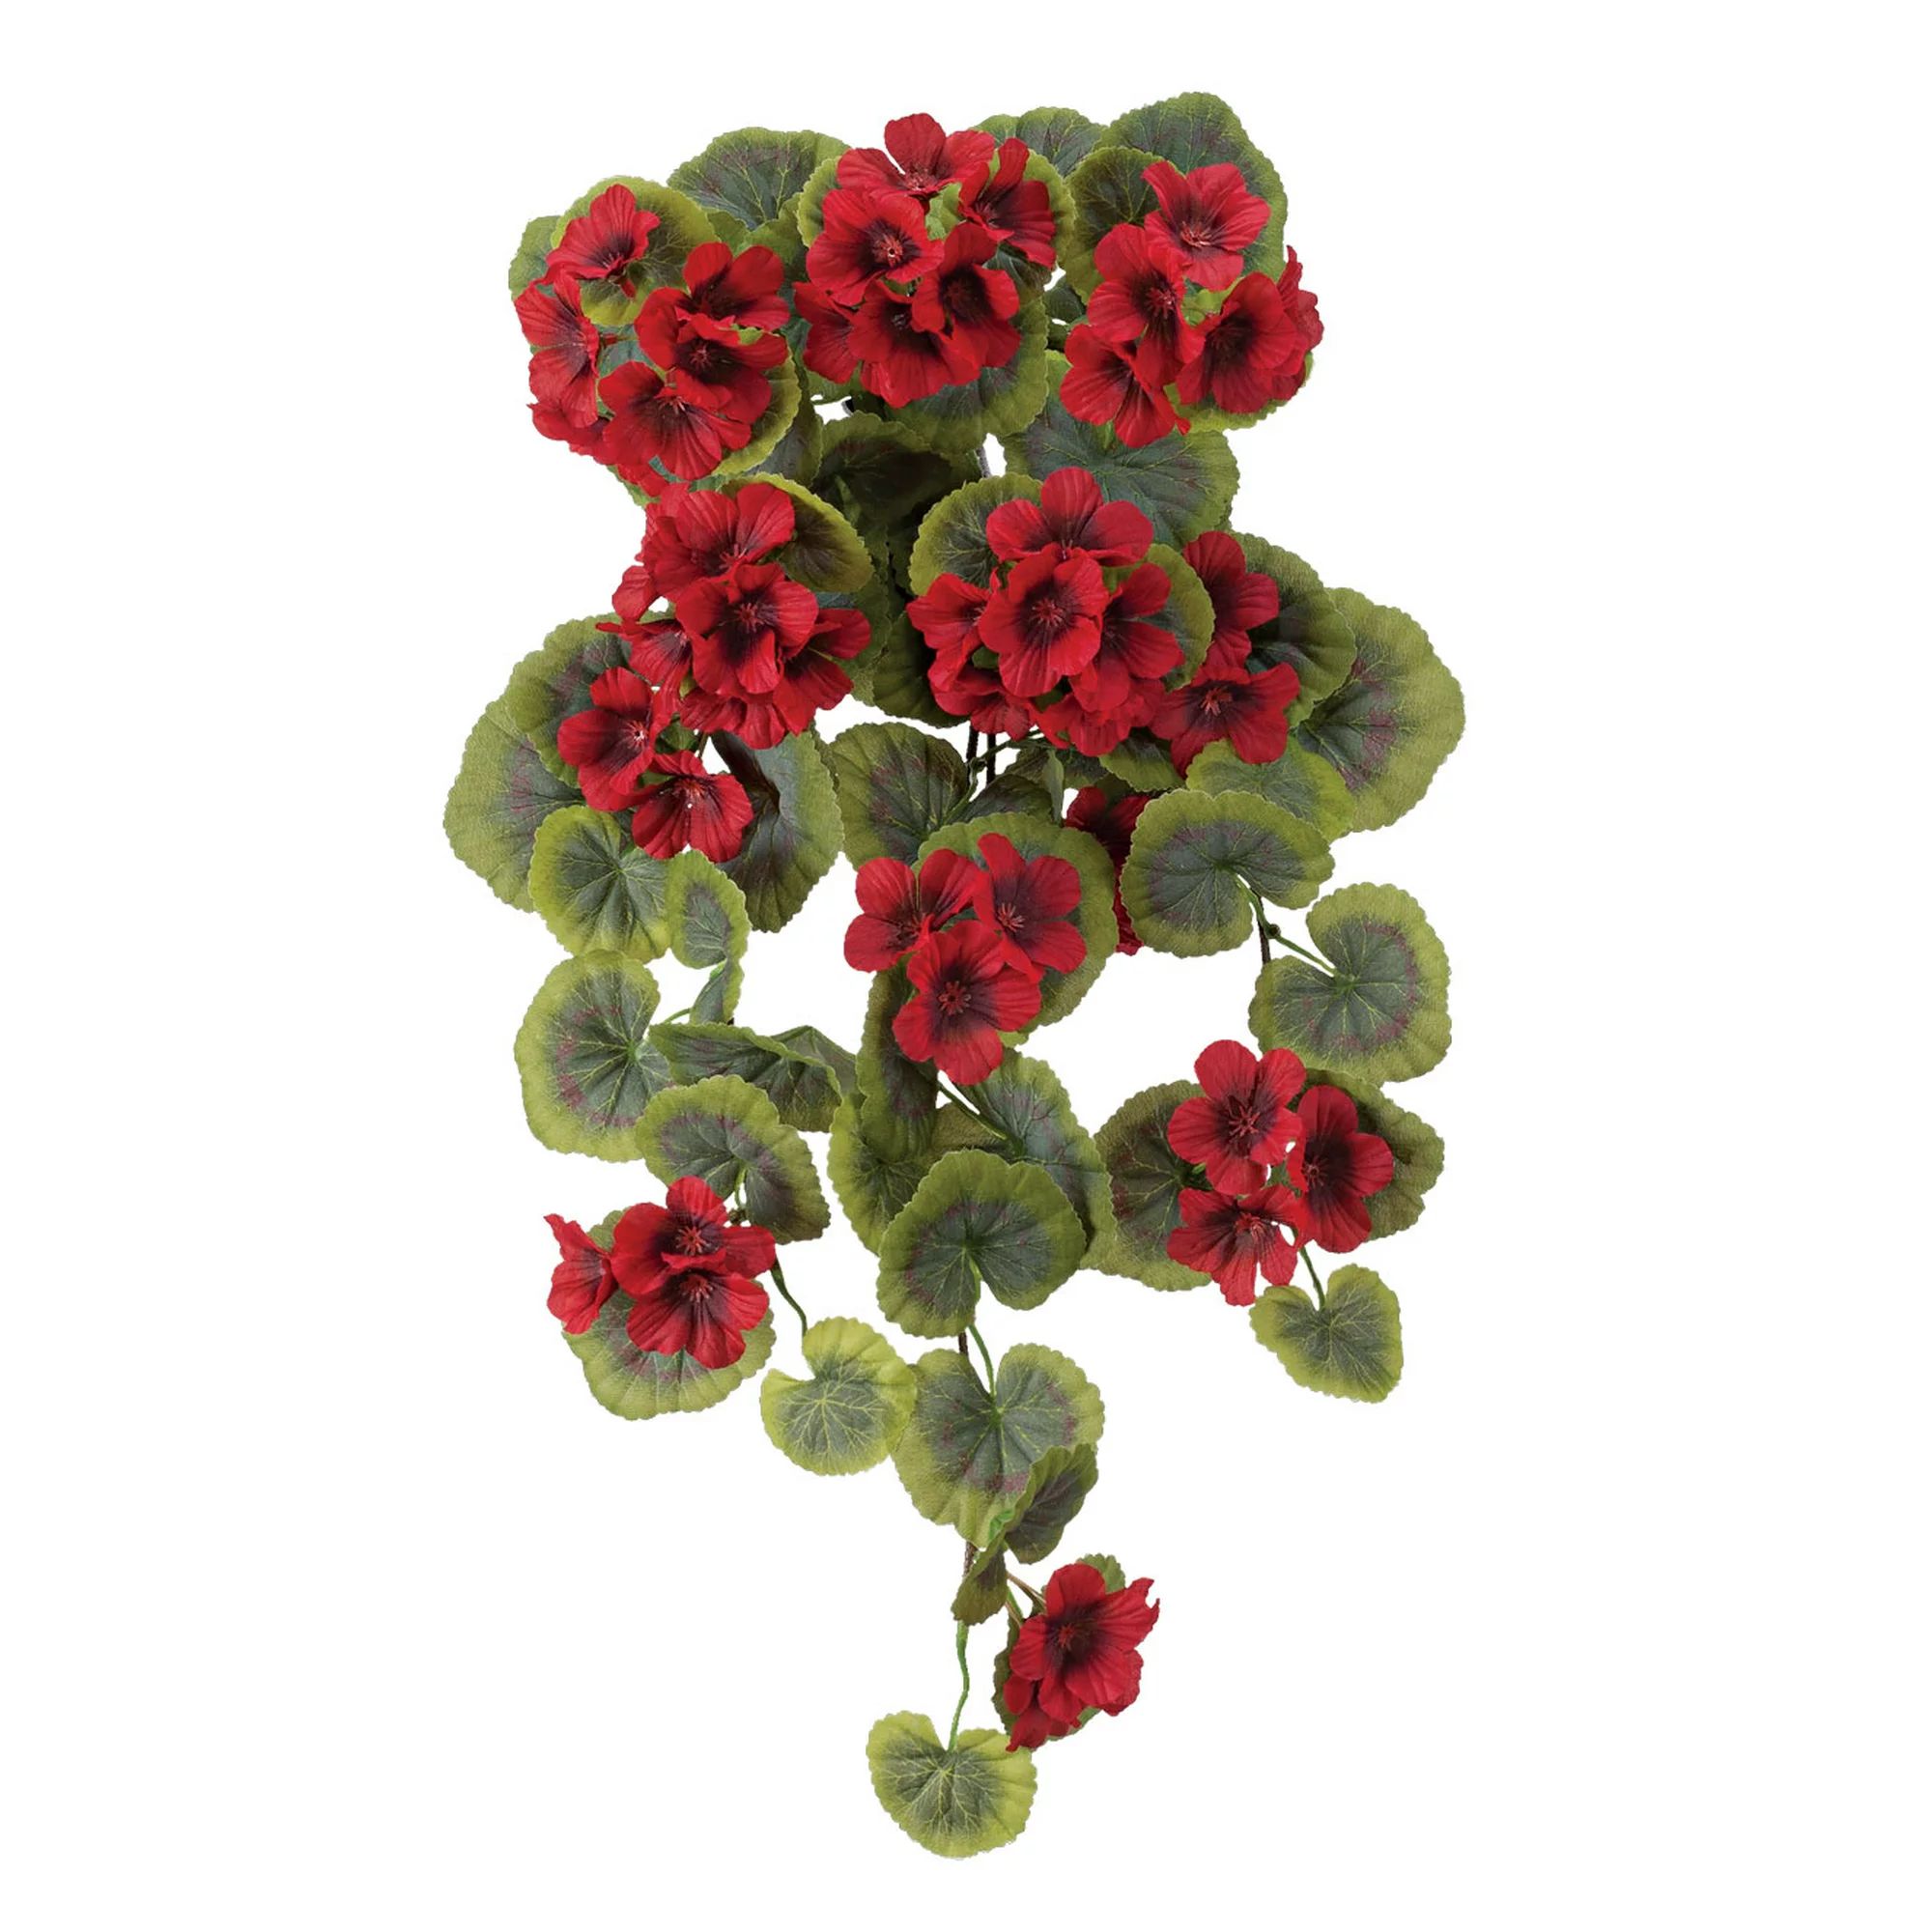 OakRidge Artificial Geranium Hanging Stem – Red, 23 ½” Long – Faux Floral Home Décor for ... | Walmart (US)